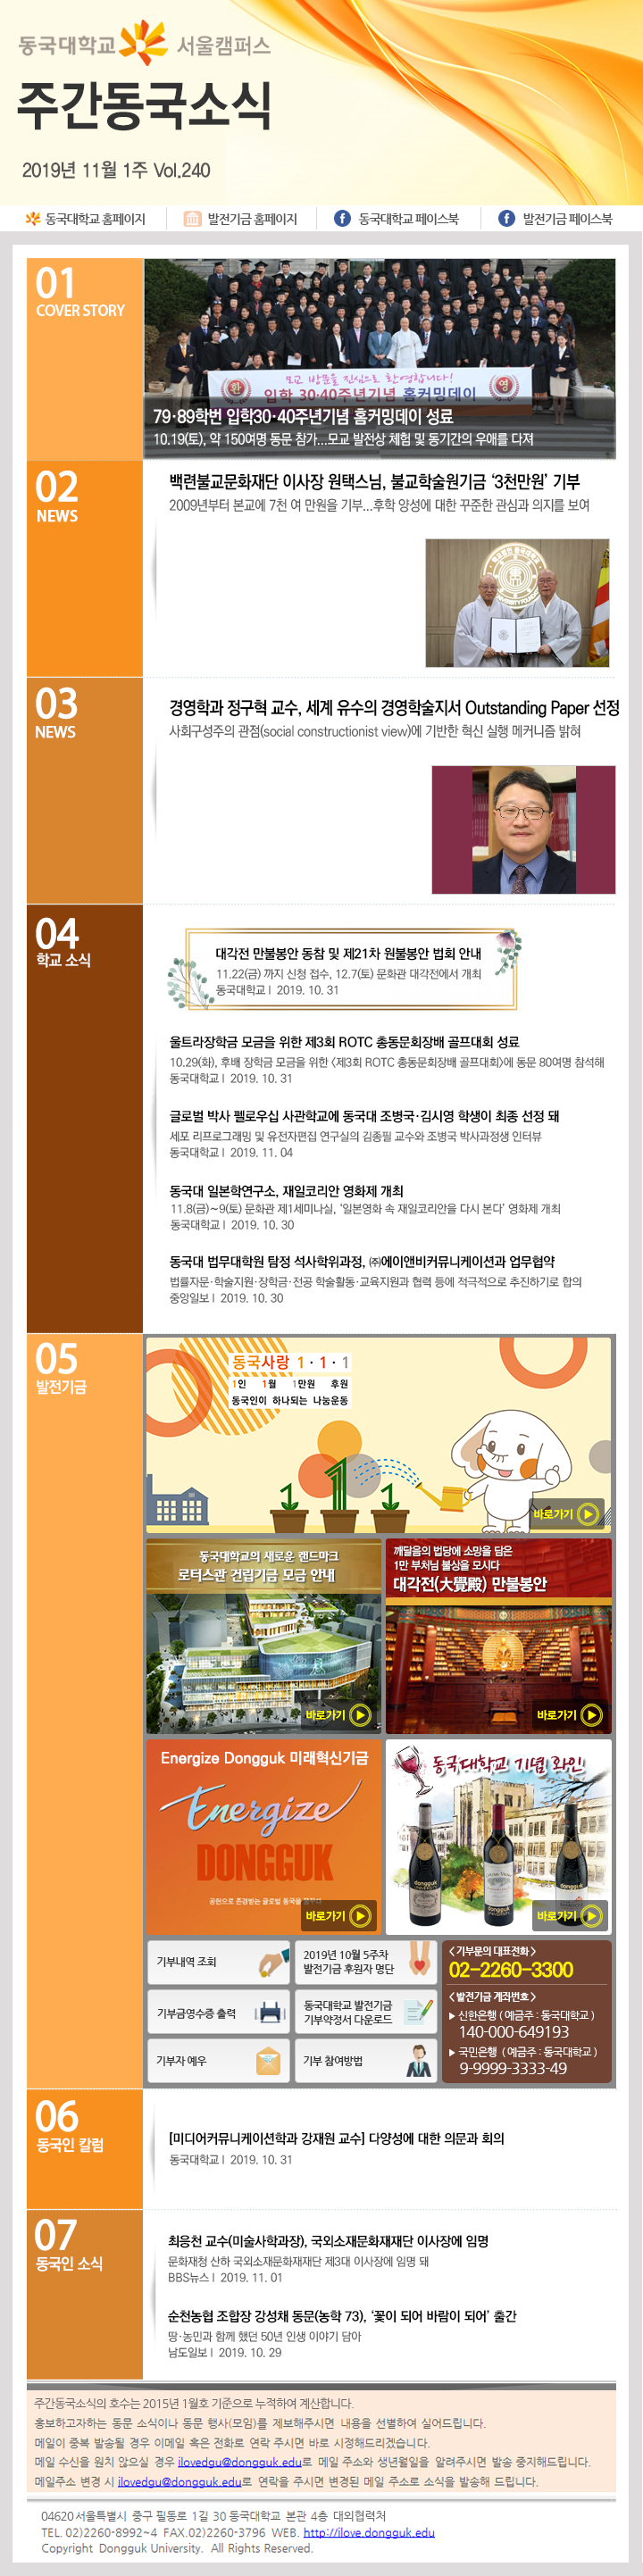 동국웹진 2019년 11월 1주 - 자세한 내용은 첨부파일로 확인하세요.